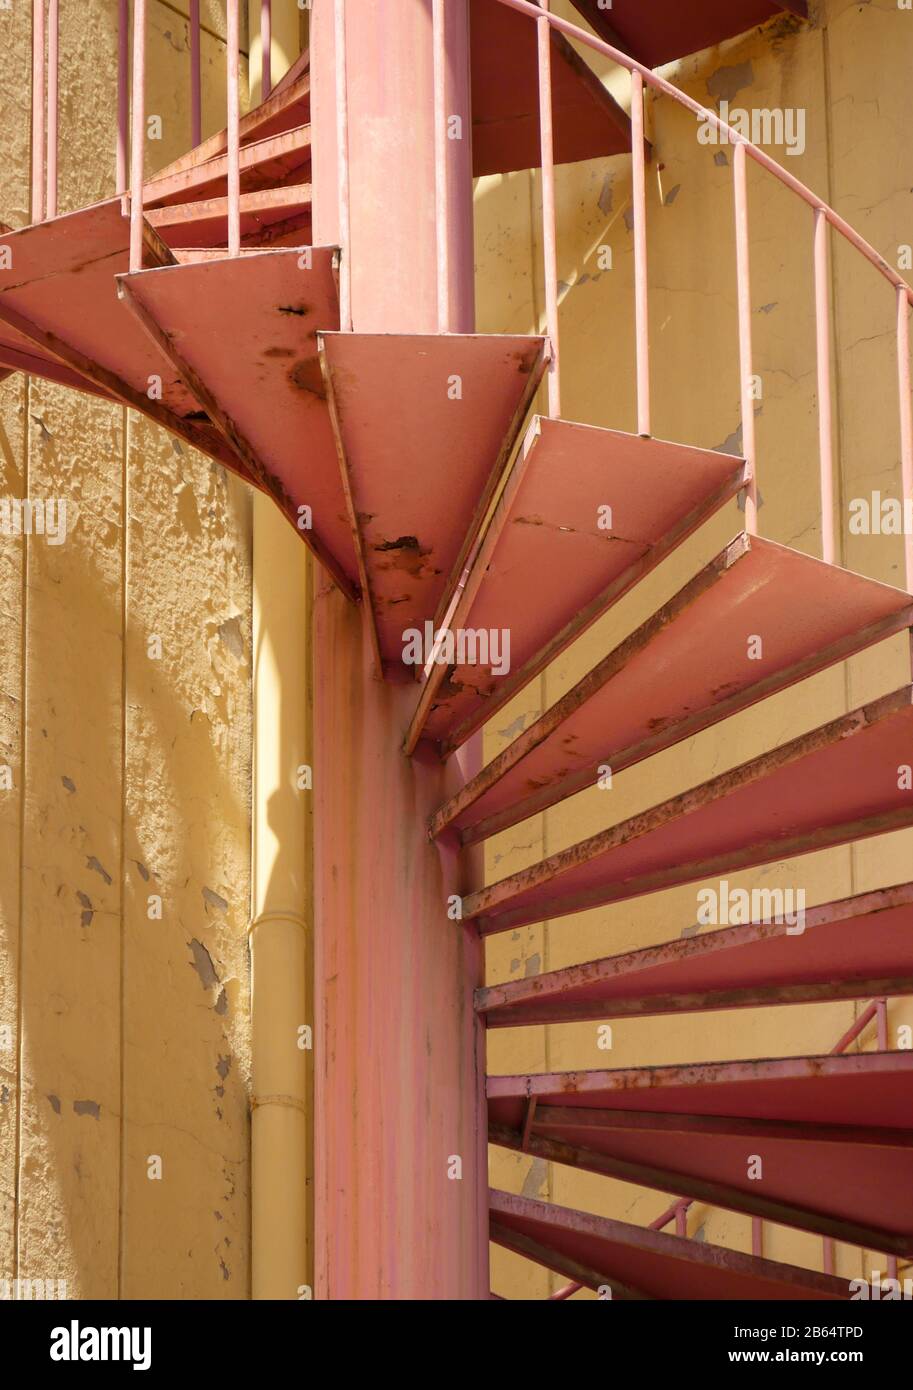 Escalier en colimaçon allant du sol au sol à l'extérieur d'un bâtiment peint de couleur jaune. Banque D'Images